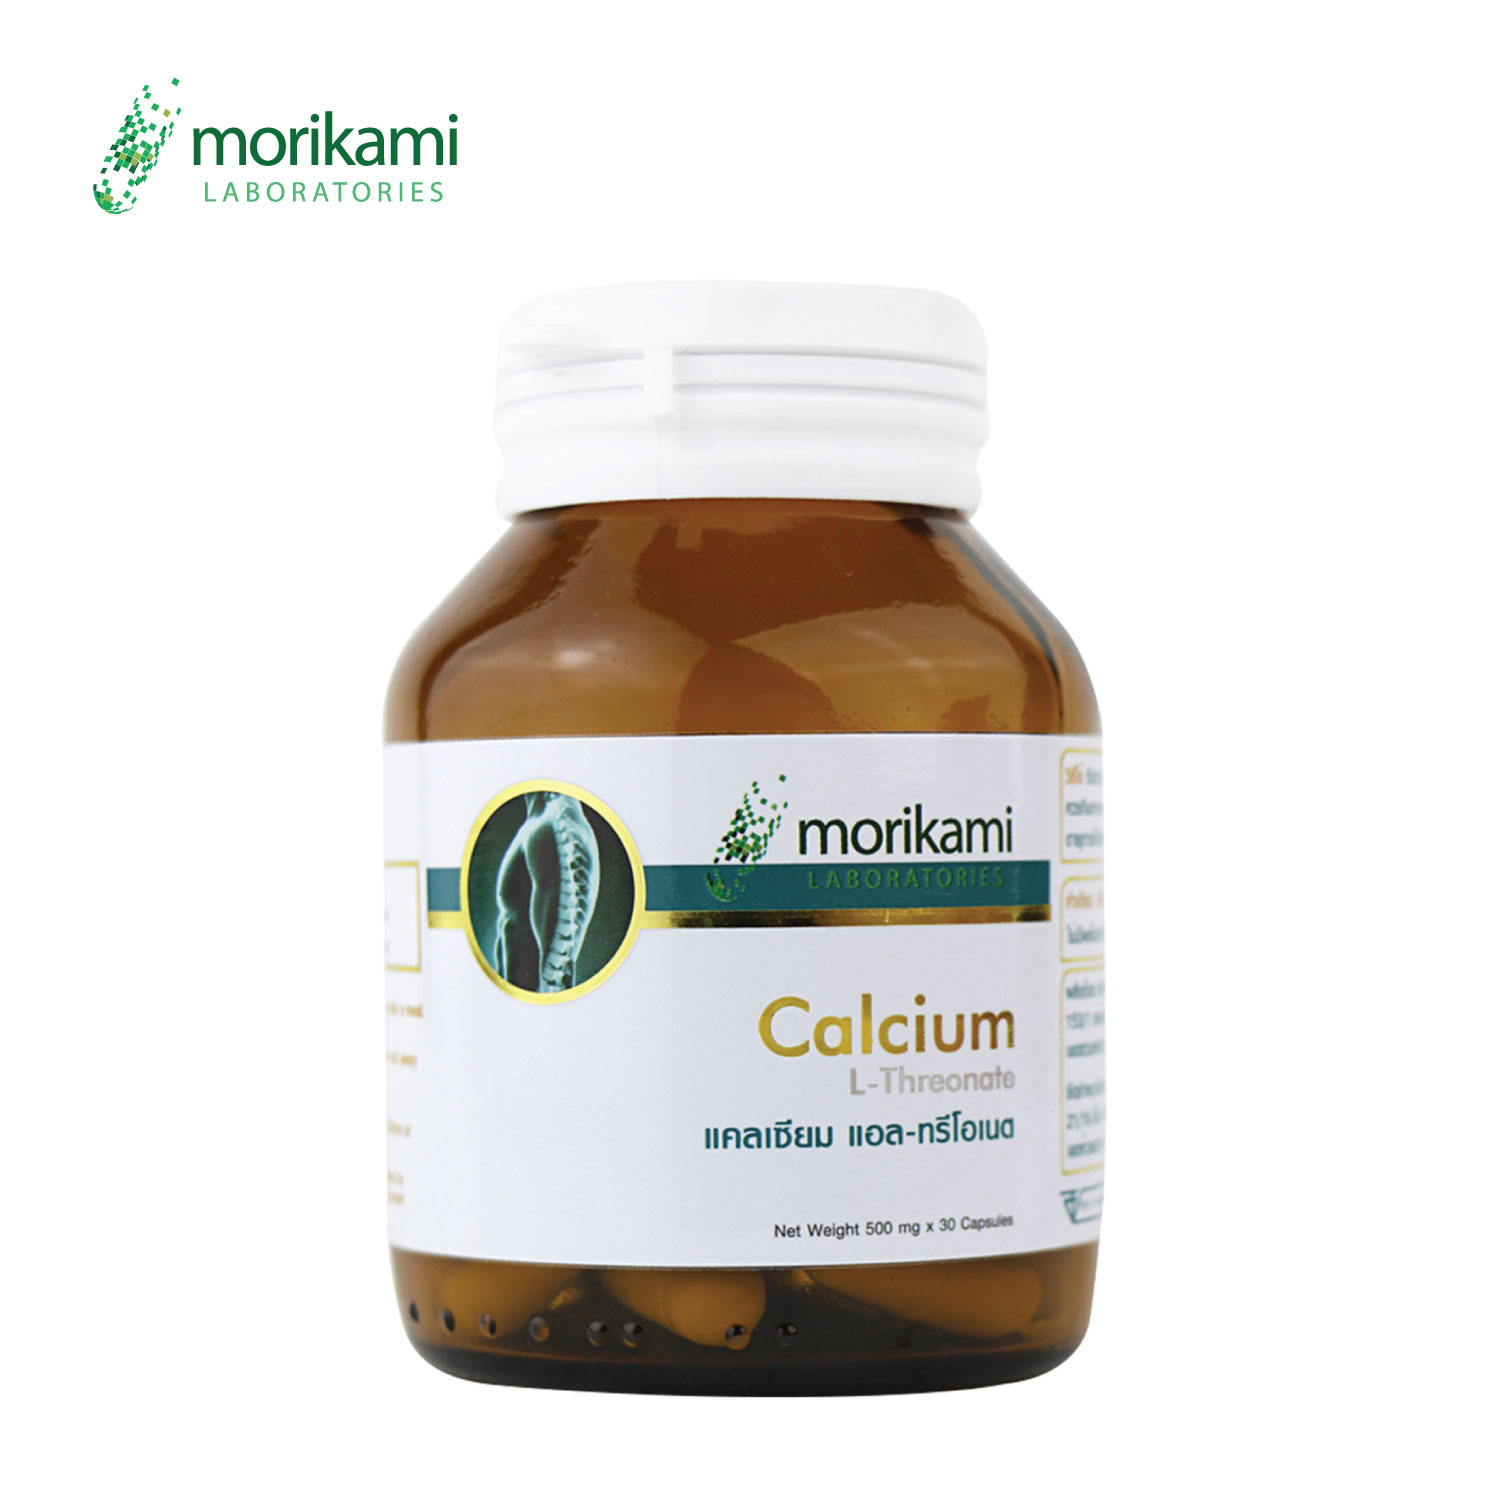 แคลเซียม แอลทรีโอเนต Calcium L-Threonate x 1 ขวด Morikami Laboratories แคลเซียมจากพืช ข้าวโพด Calcium L-Threonate แคลเซียม แอล-ทรีโอเนต โมริคามิ